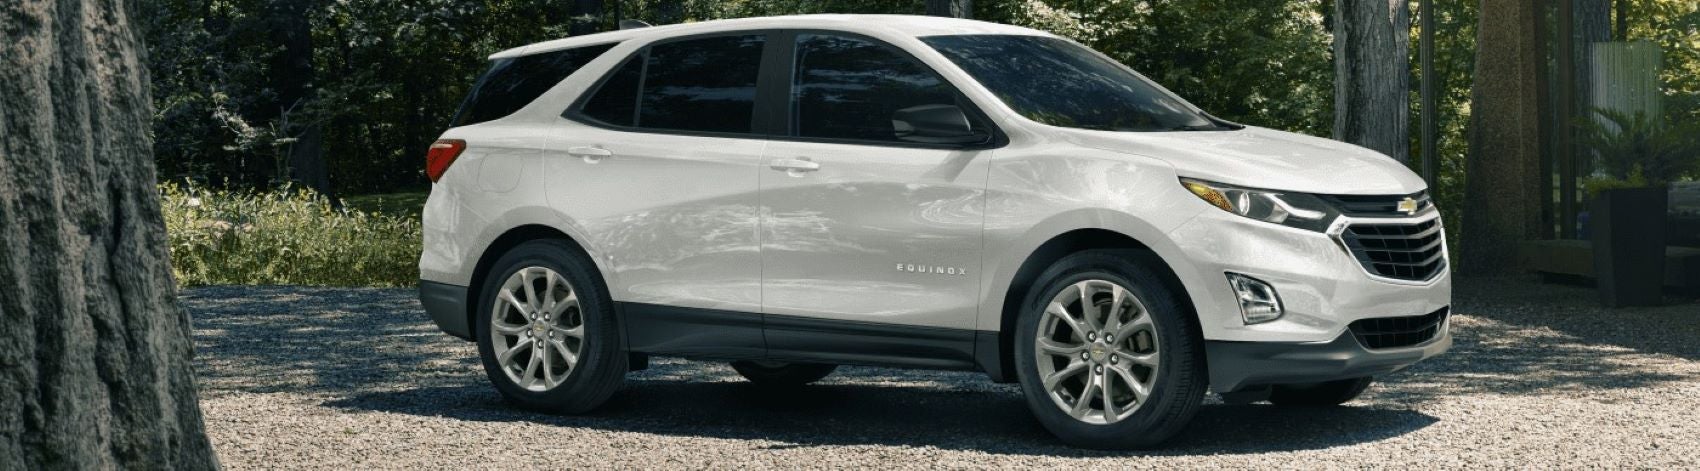 2021 Chevrolet Equinox Lease Deals